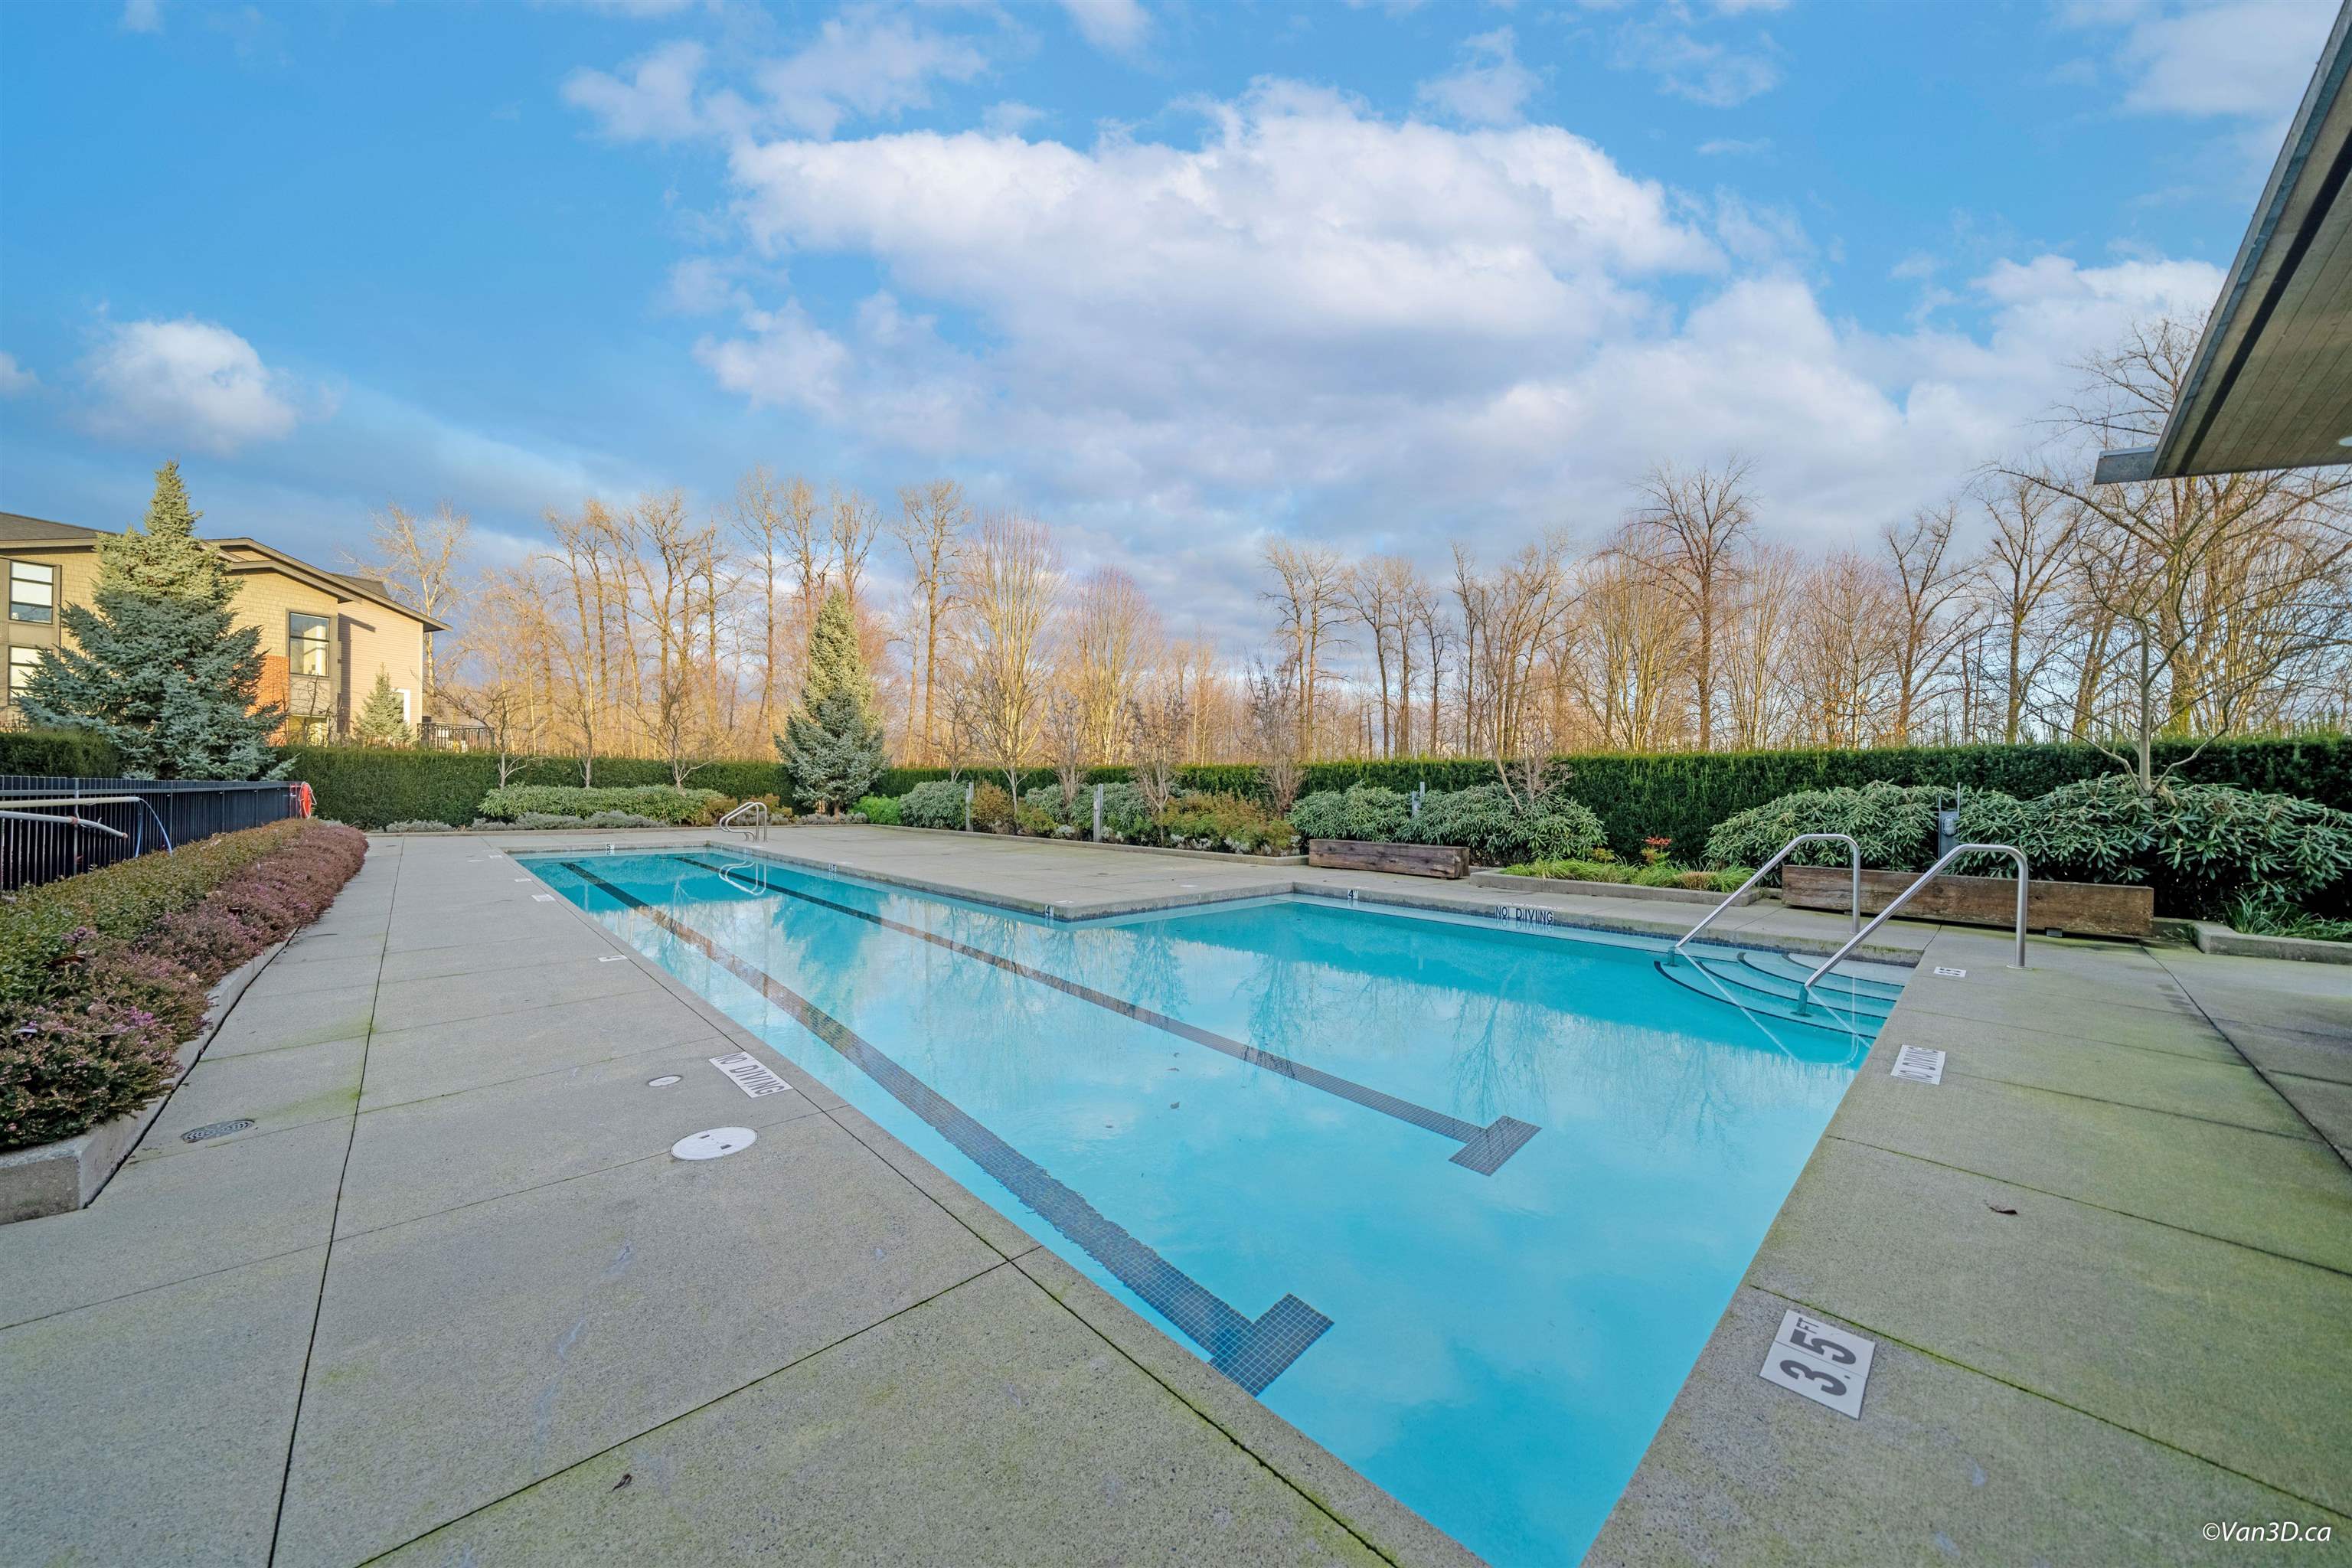 Great amenities include outdoor pool...